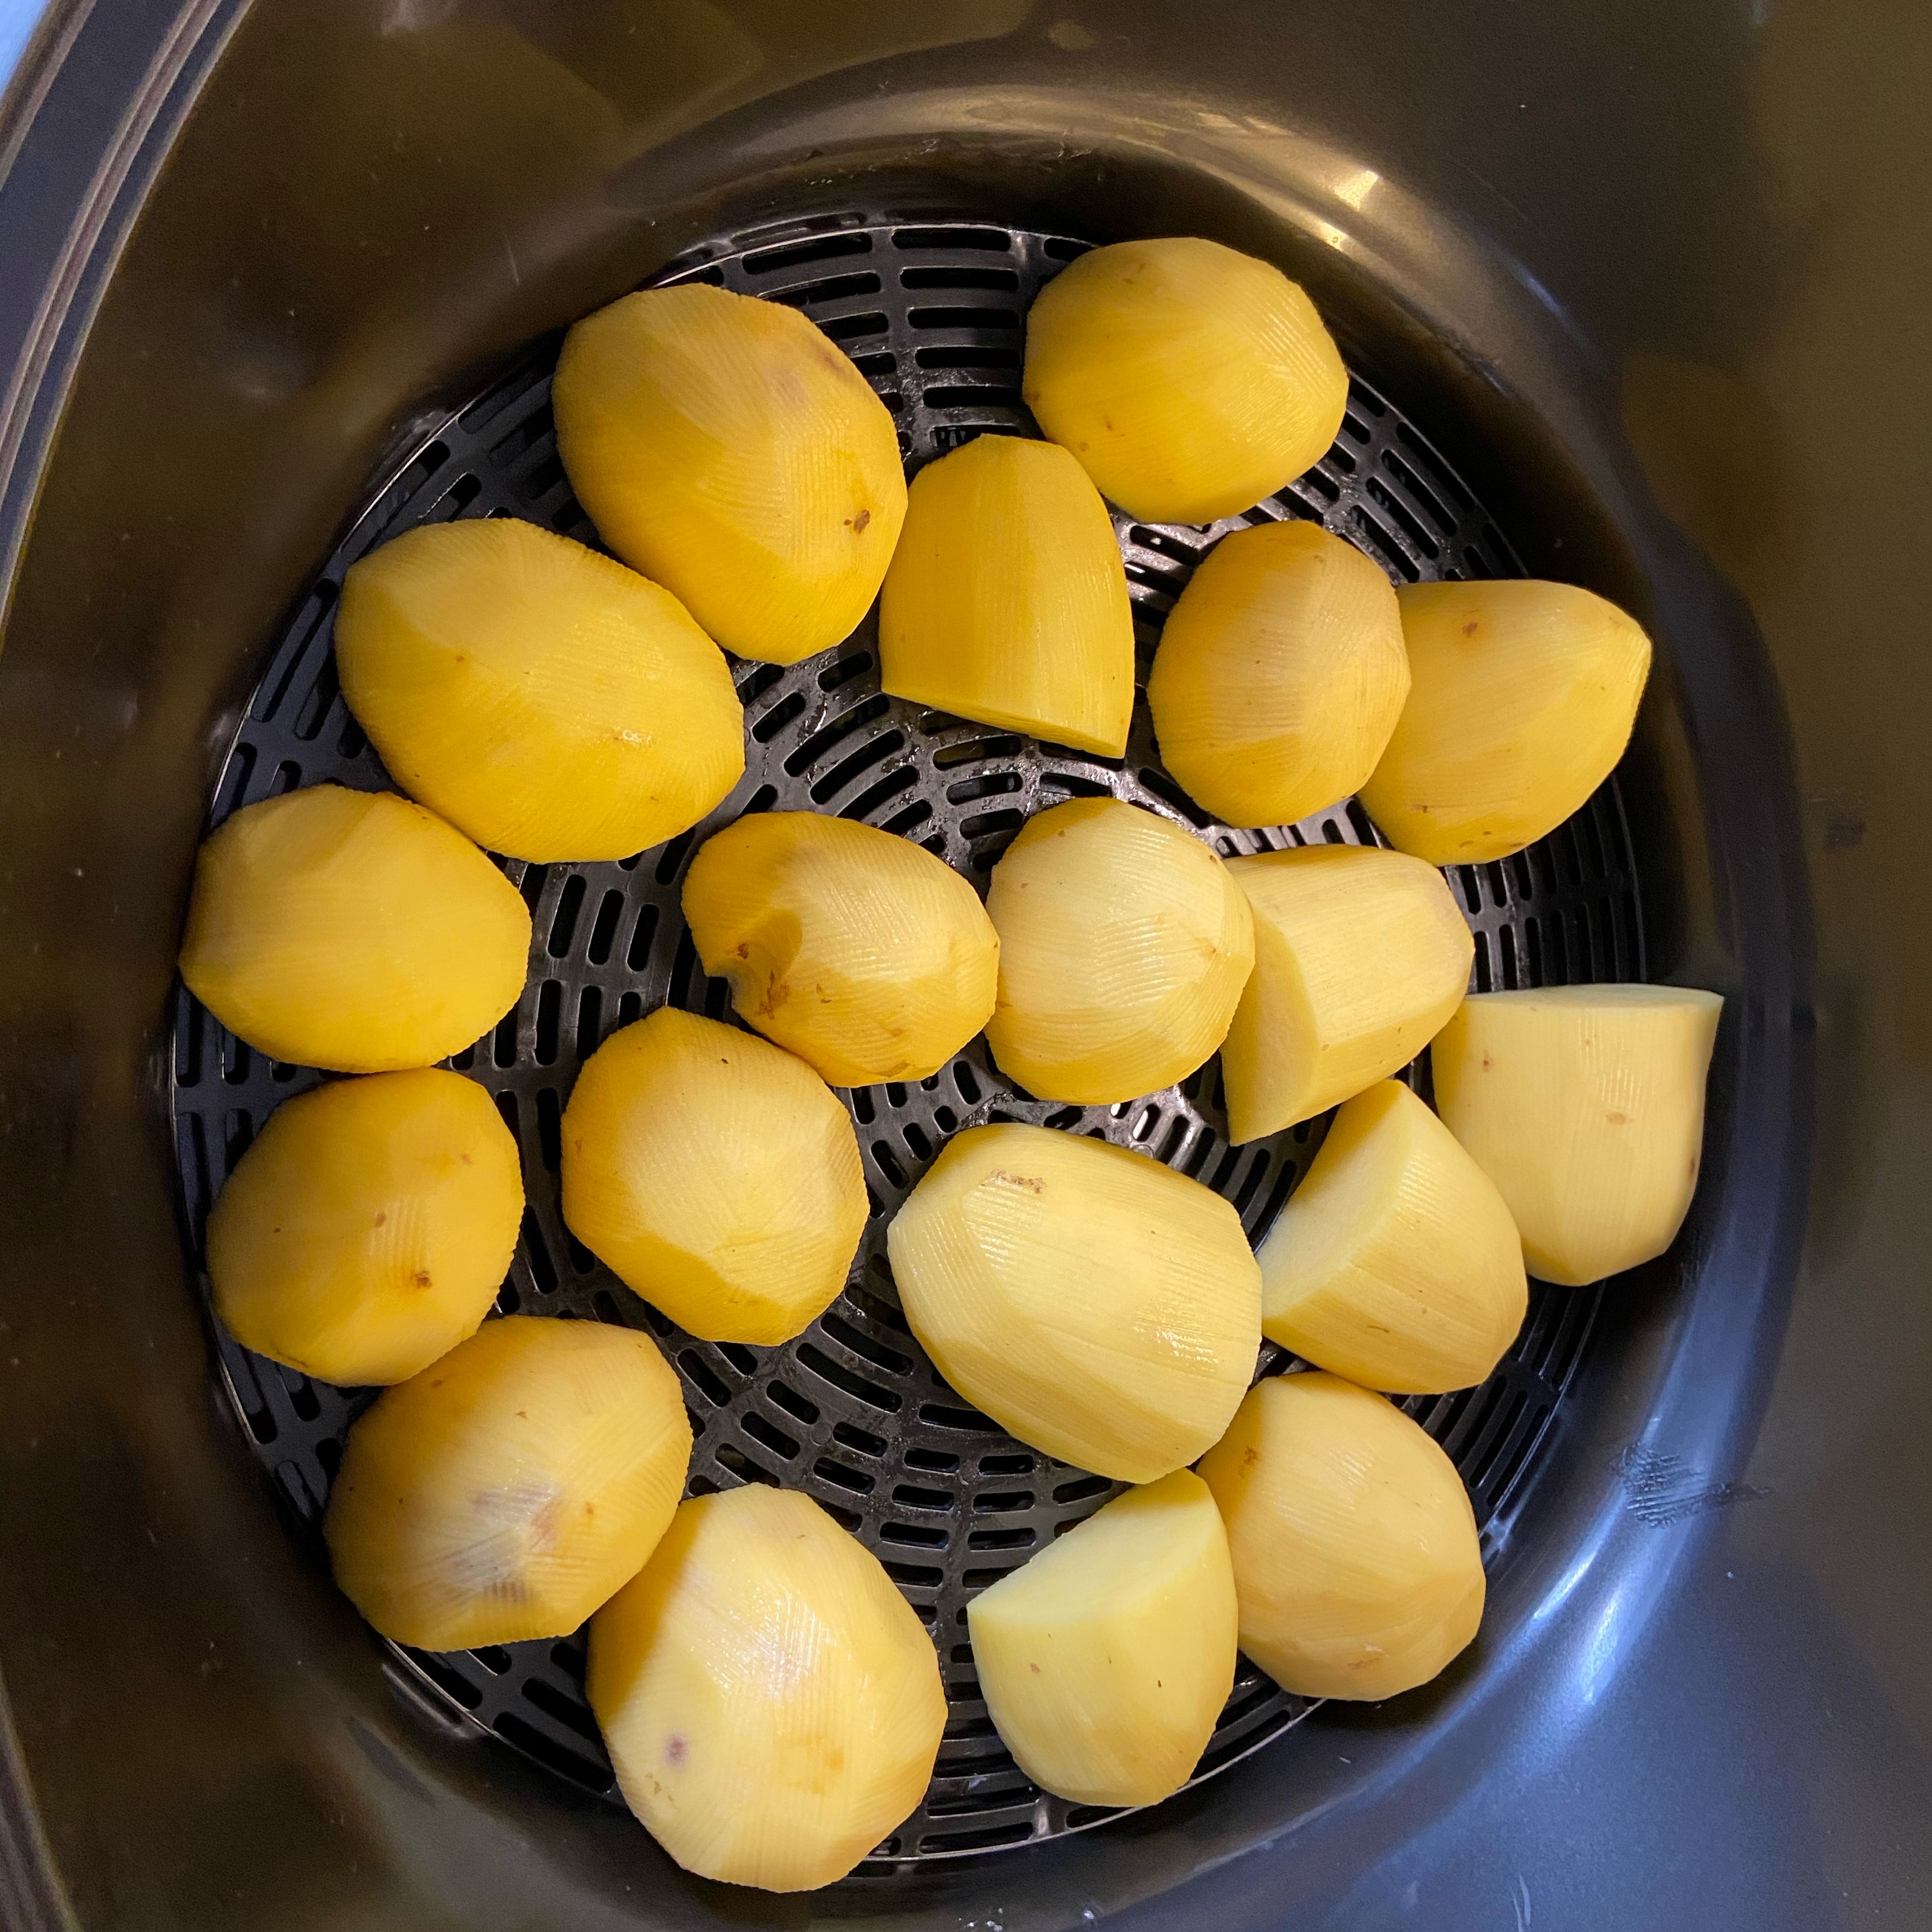 Kartoffeln schälen und in Stücke schneiden. In den Dampfgaraufsatz geben. Wasser in den Cookit bis zur Markierung geben. Funktion Dampfgaren, hohe Dampfintensität für 30 Minuten auswählen.